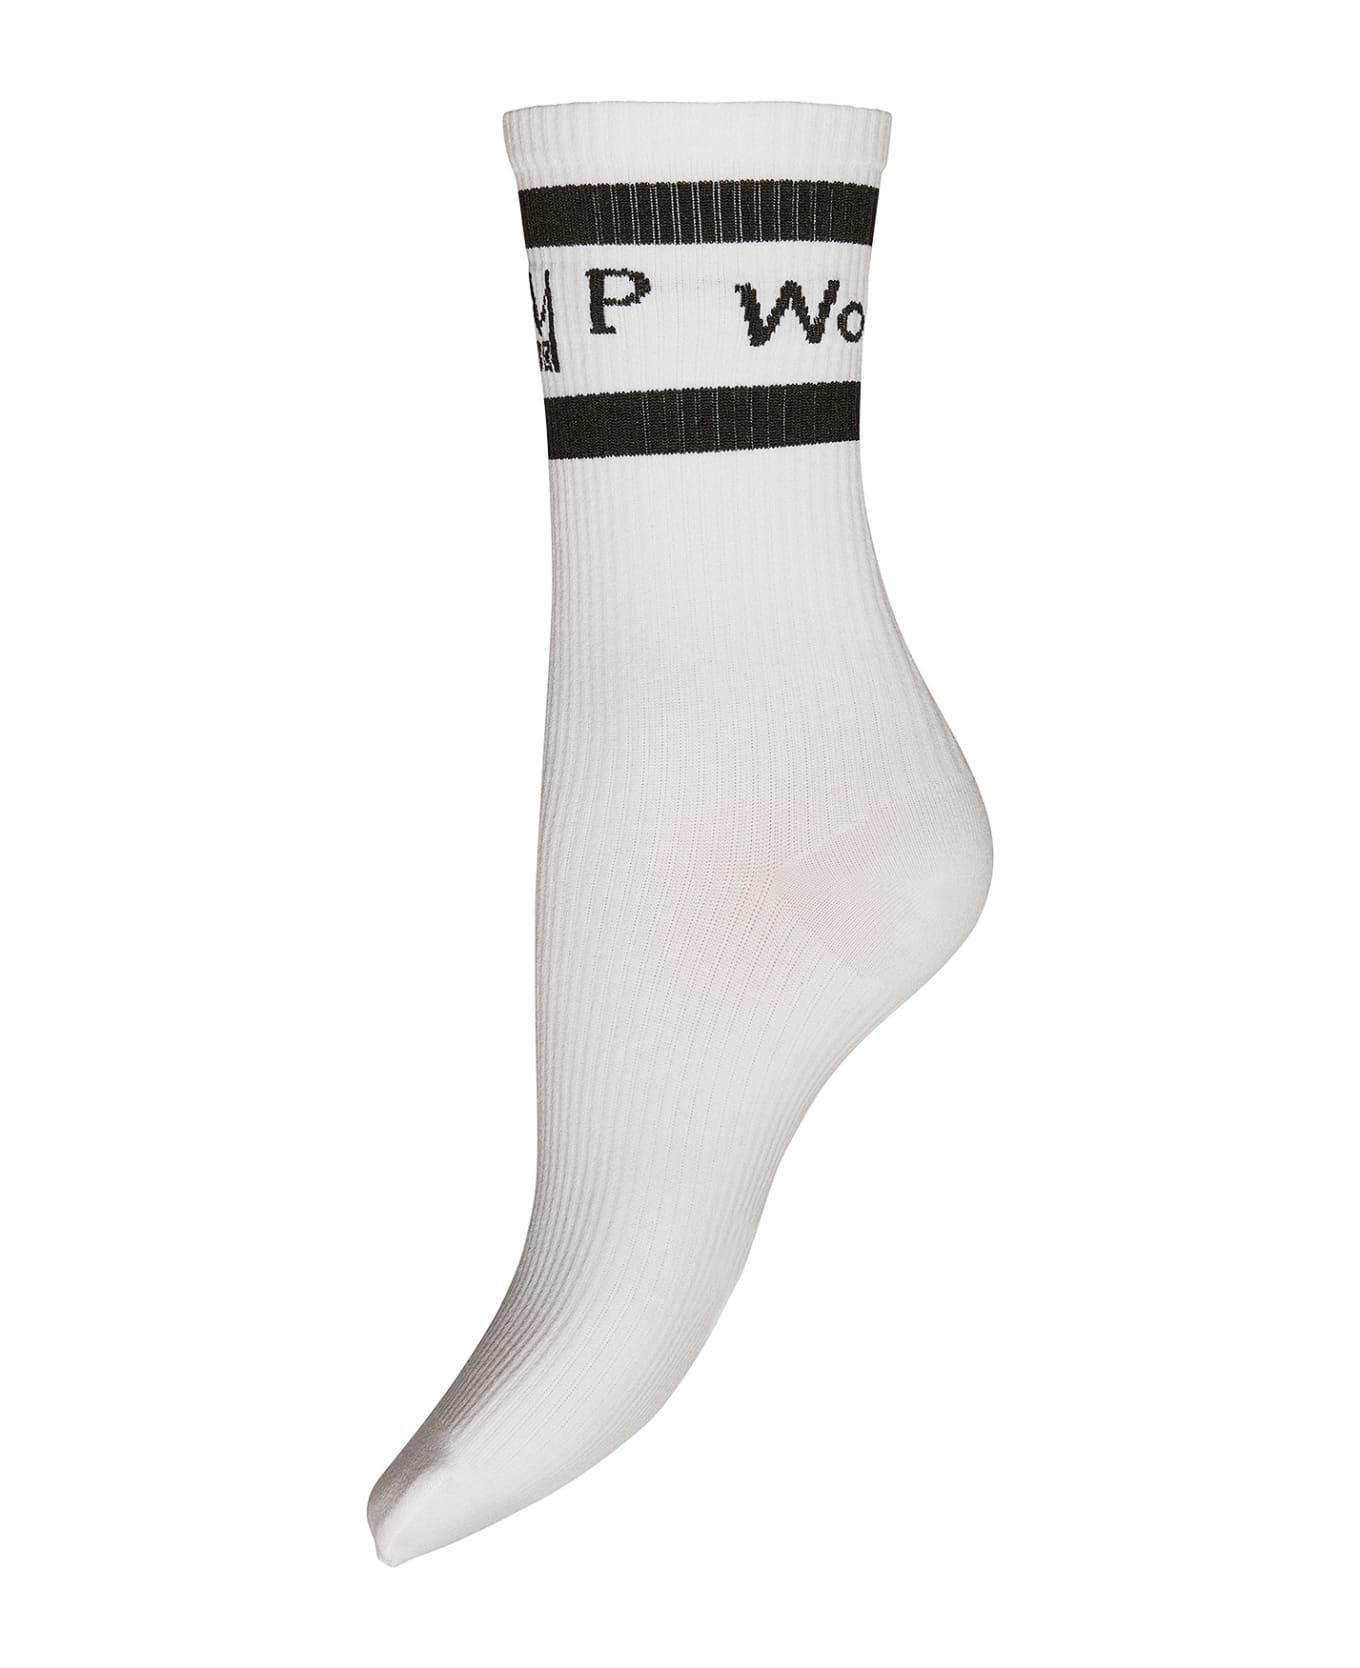 MVP Wardrobe Socks - White